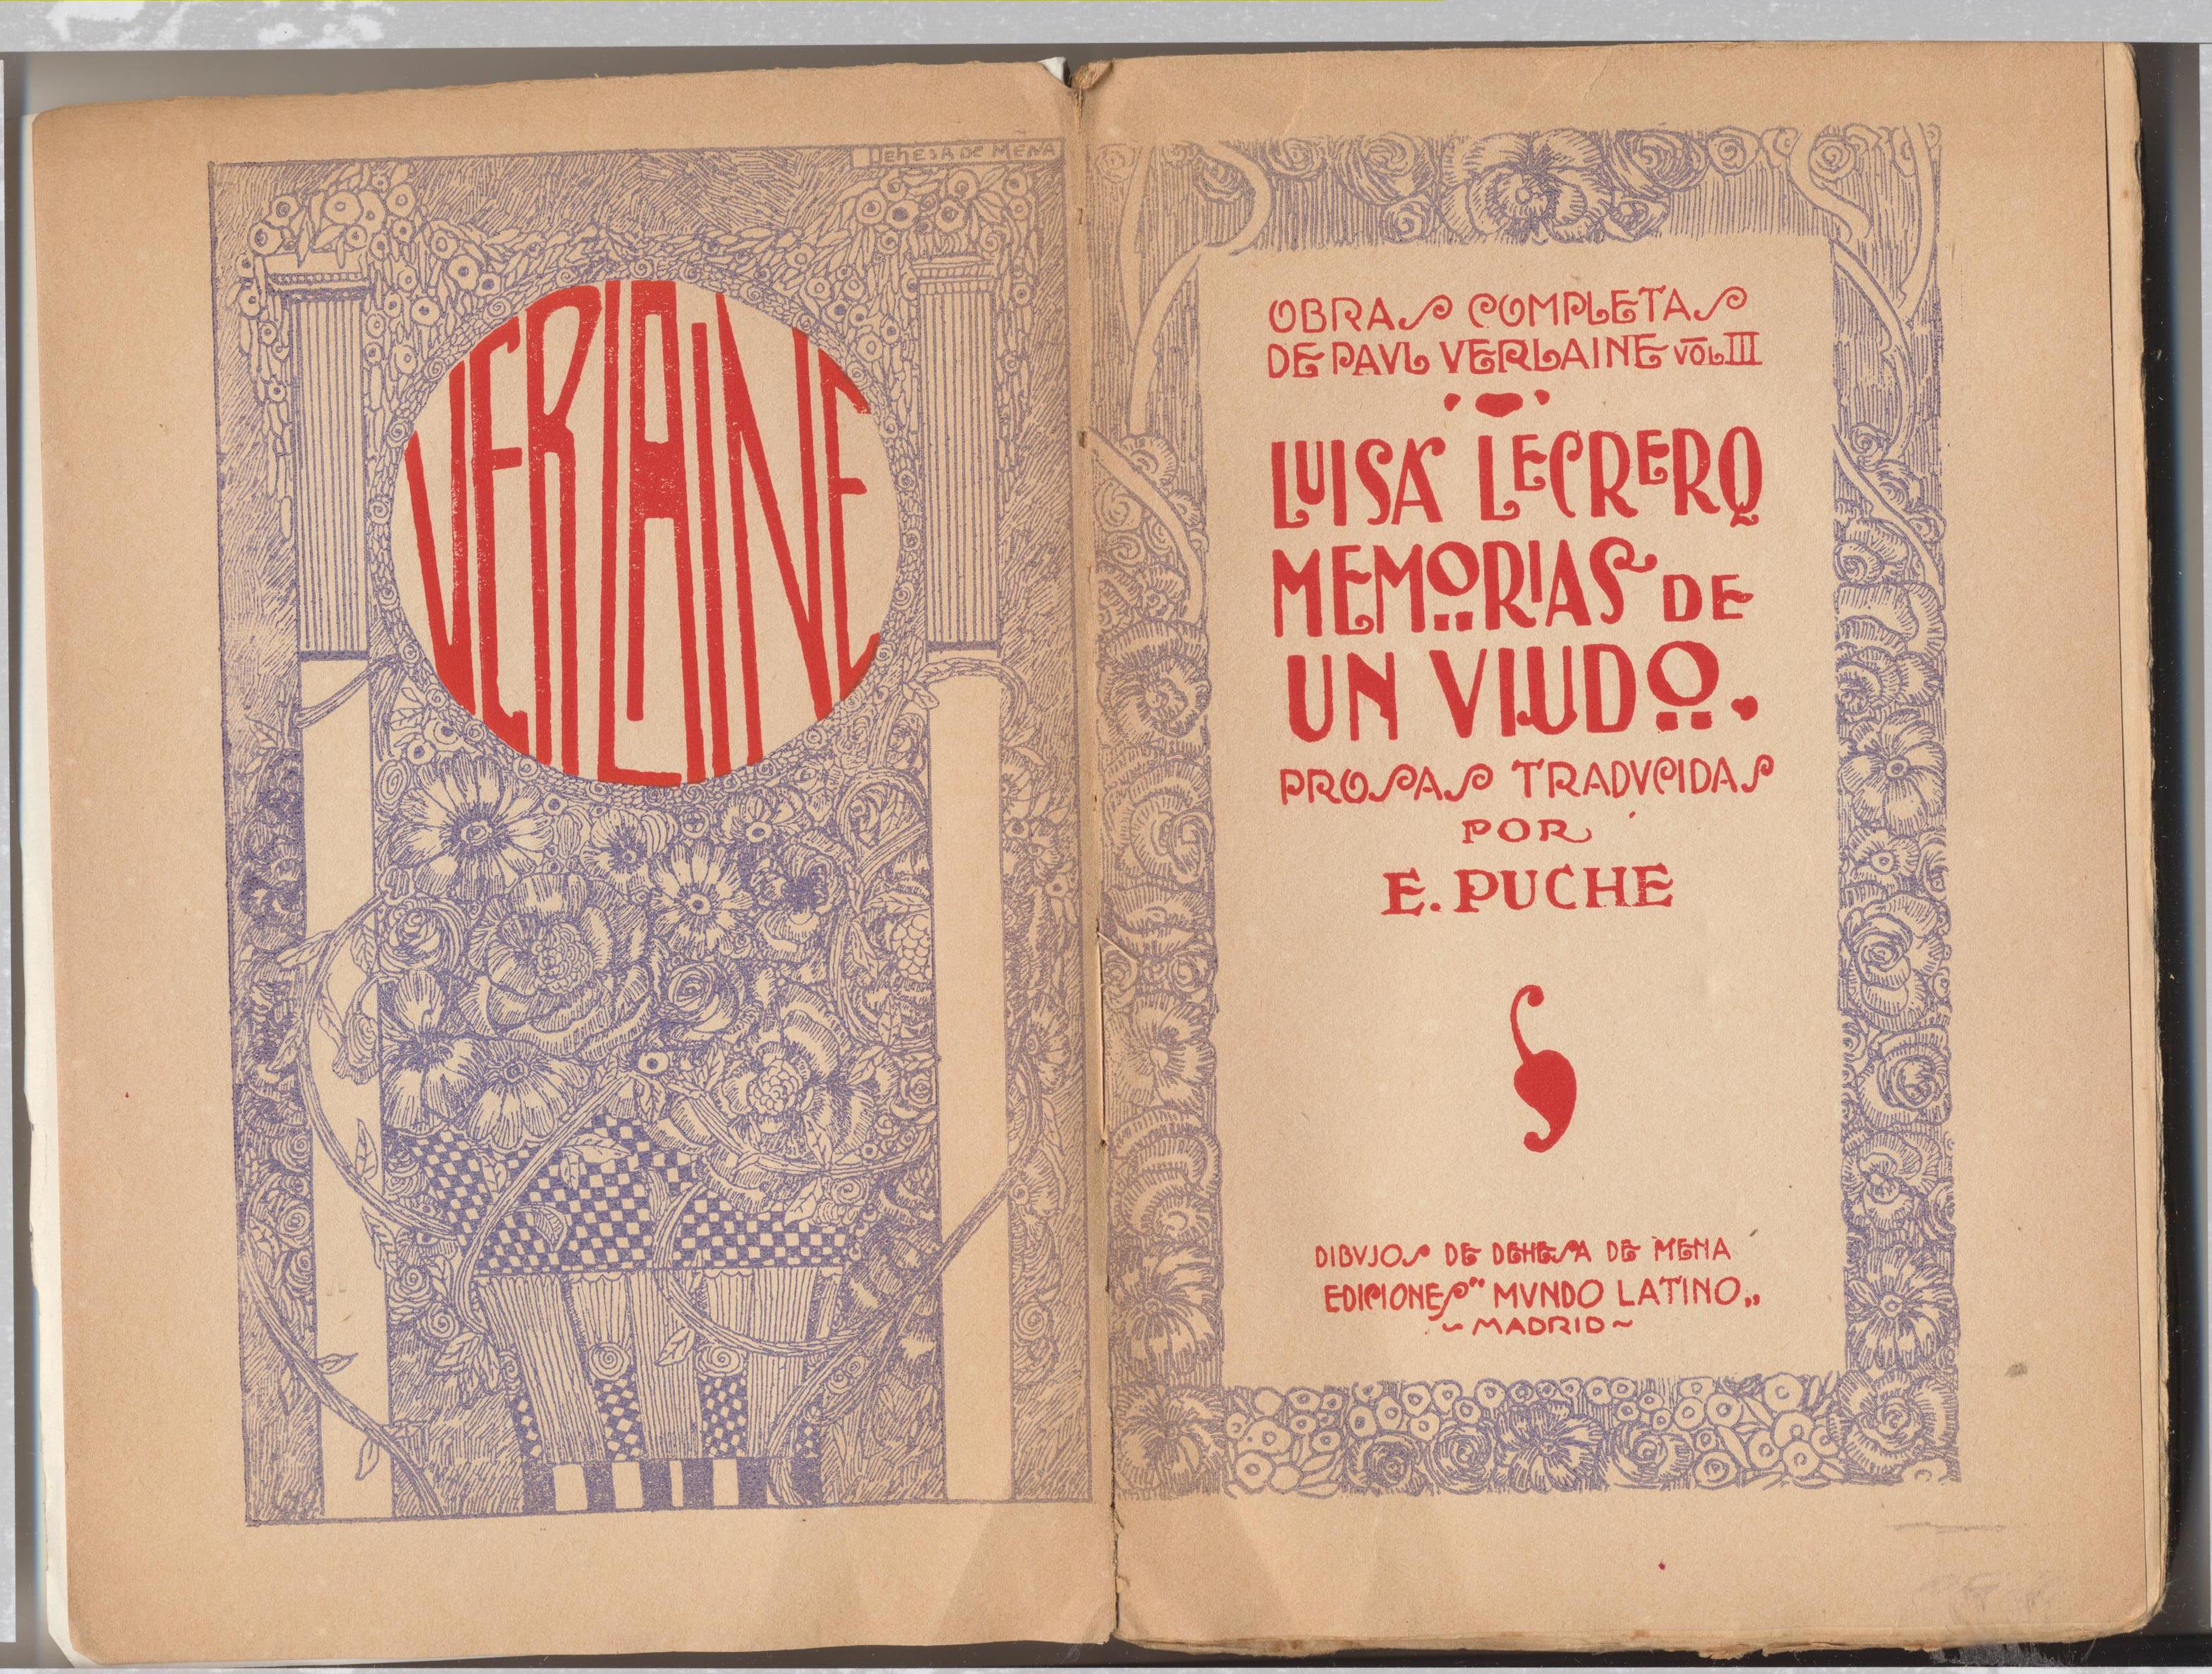 Memorias de un viudo. Obras Completas de Paul Verlaine Tomo III. Ediciones Mundo latino 1921. Mas de la mitad del libro SIN ABRIR